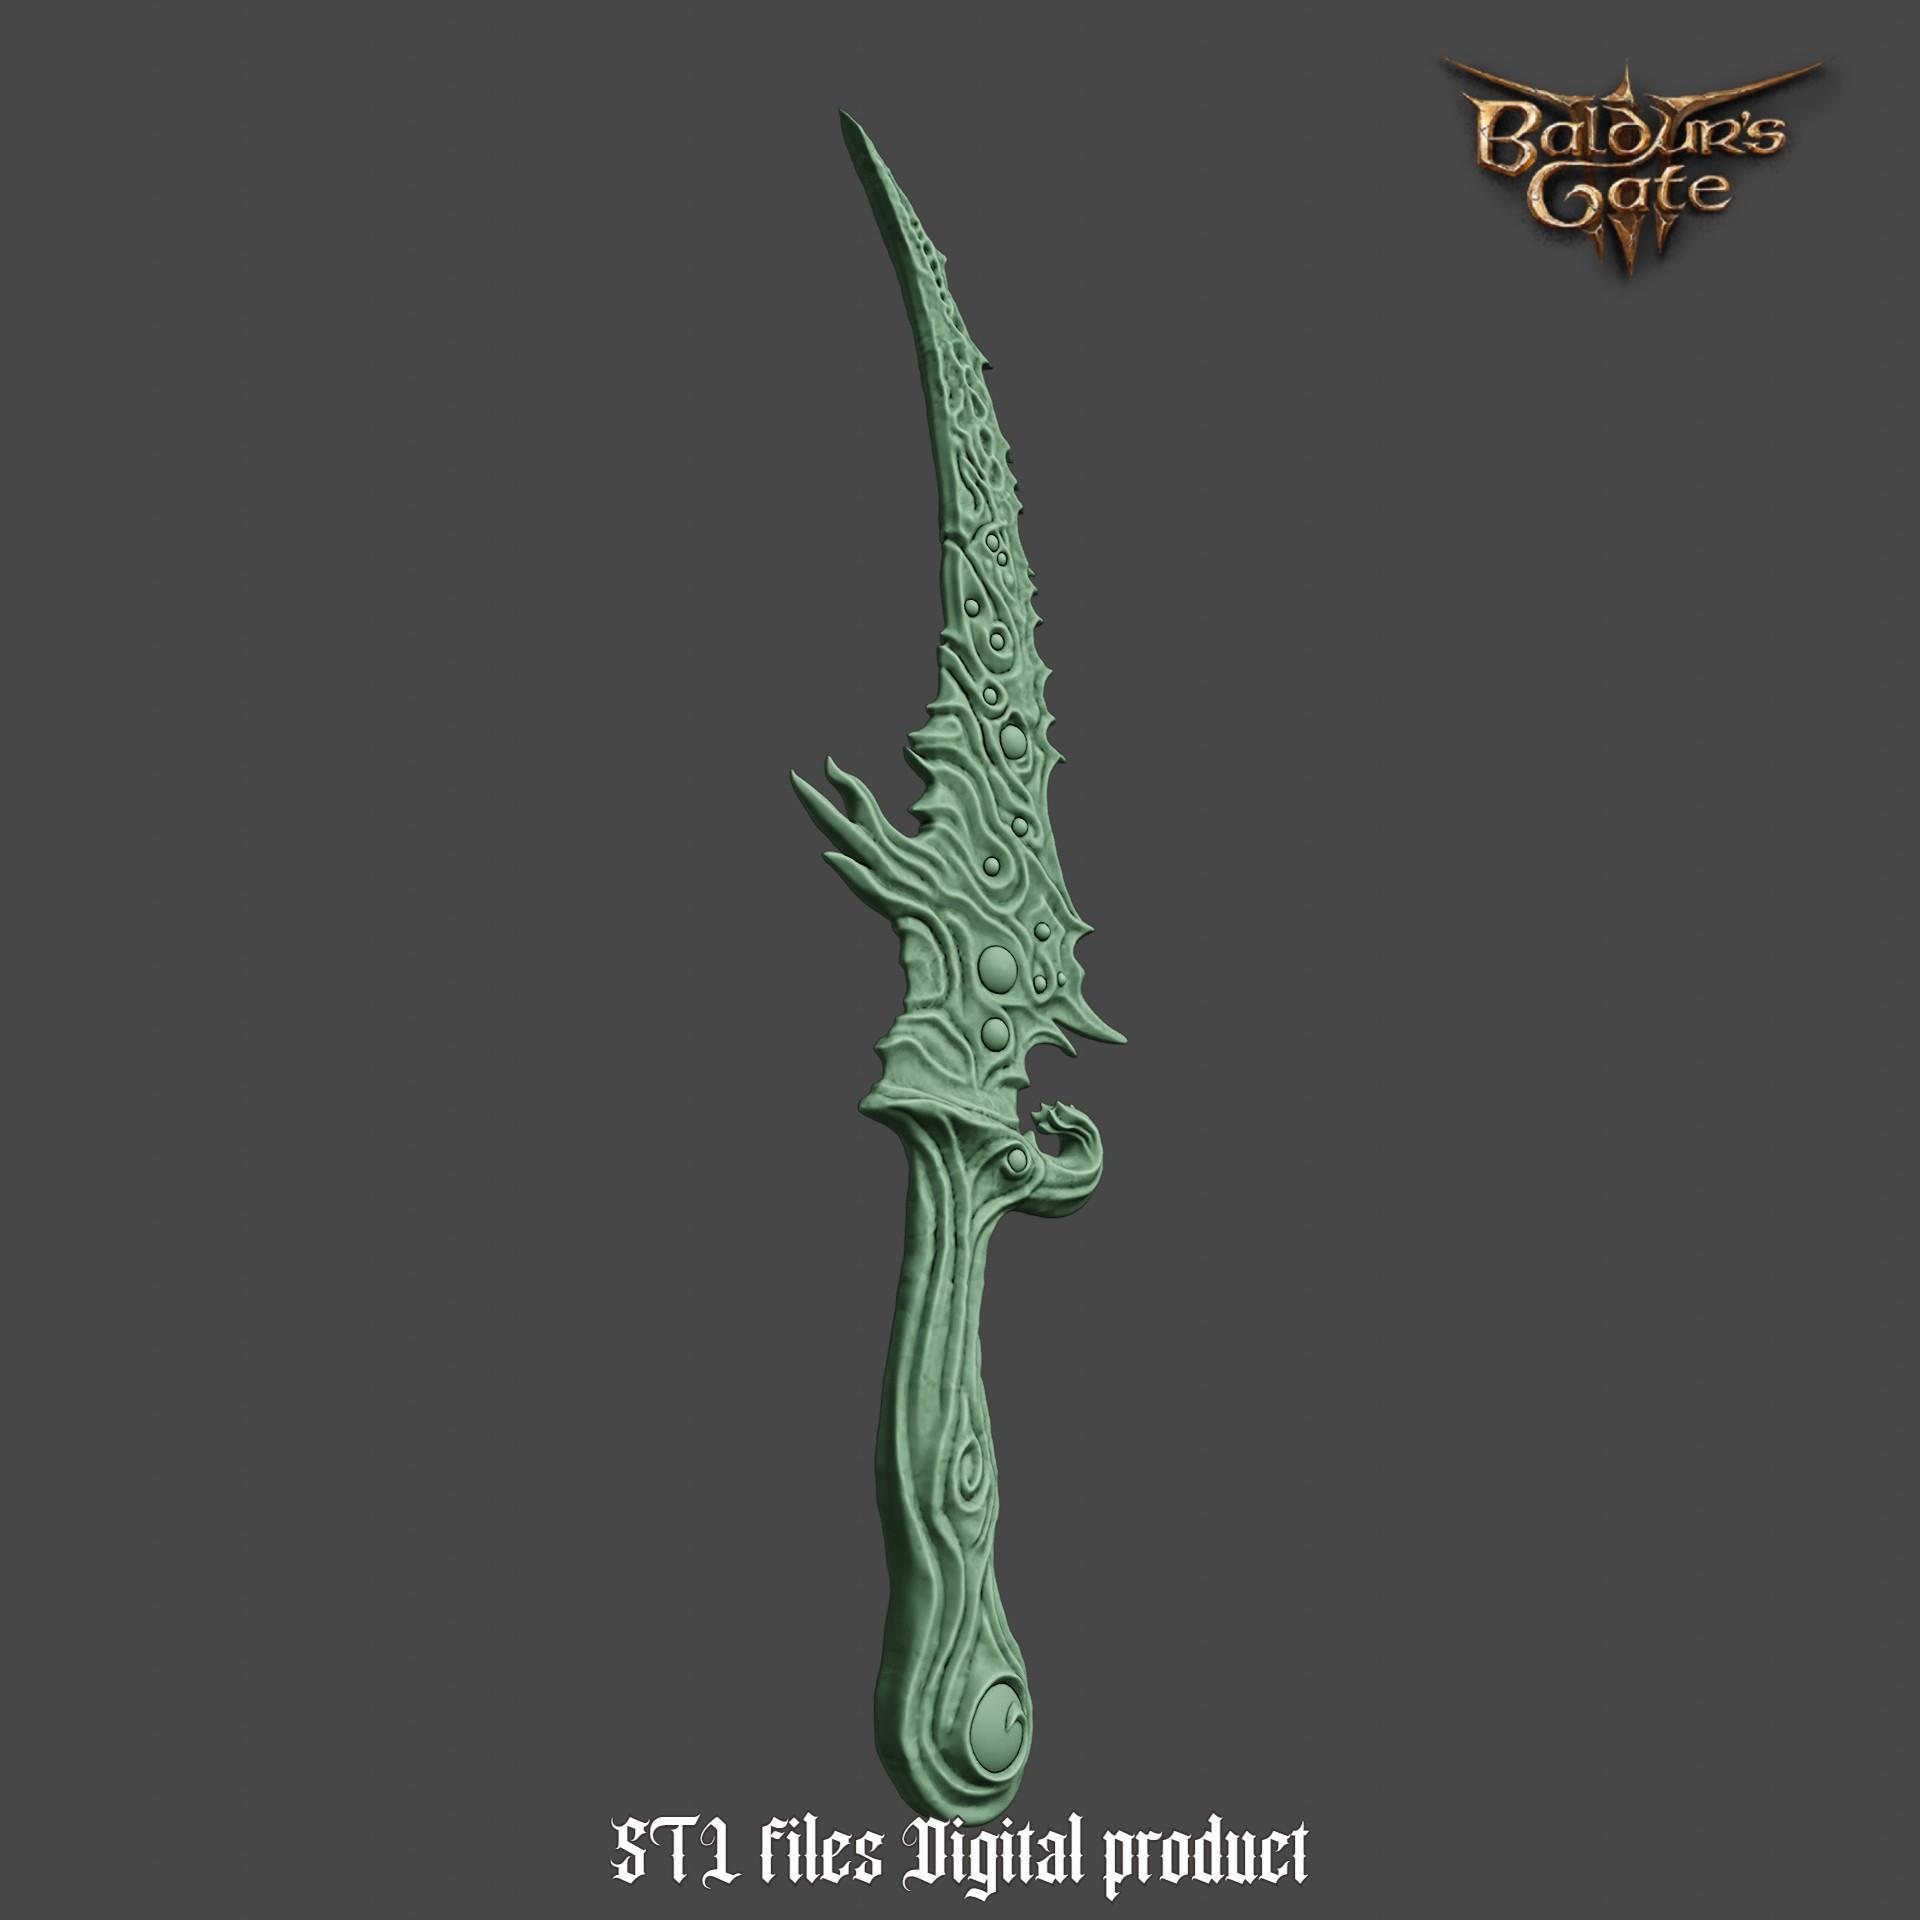 Fantasy Mastercrafted Susser Dagger from Baldurs Gate 3 3d model